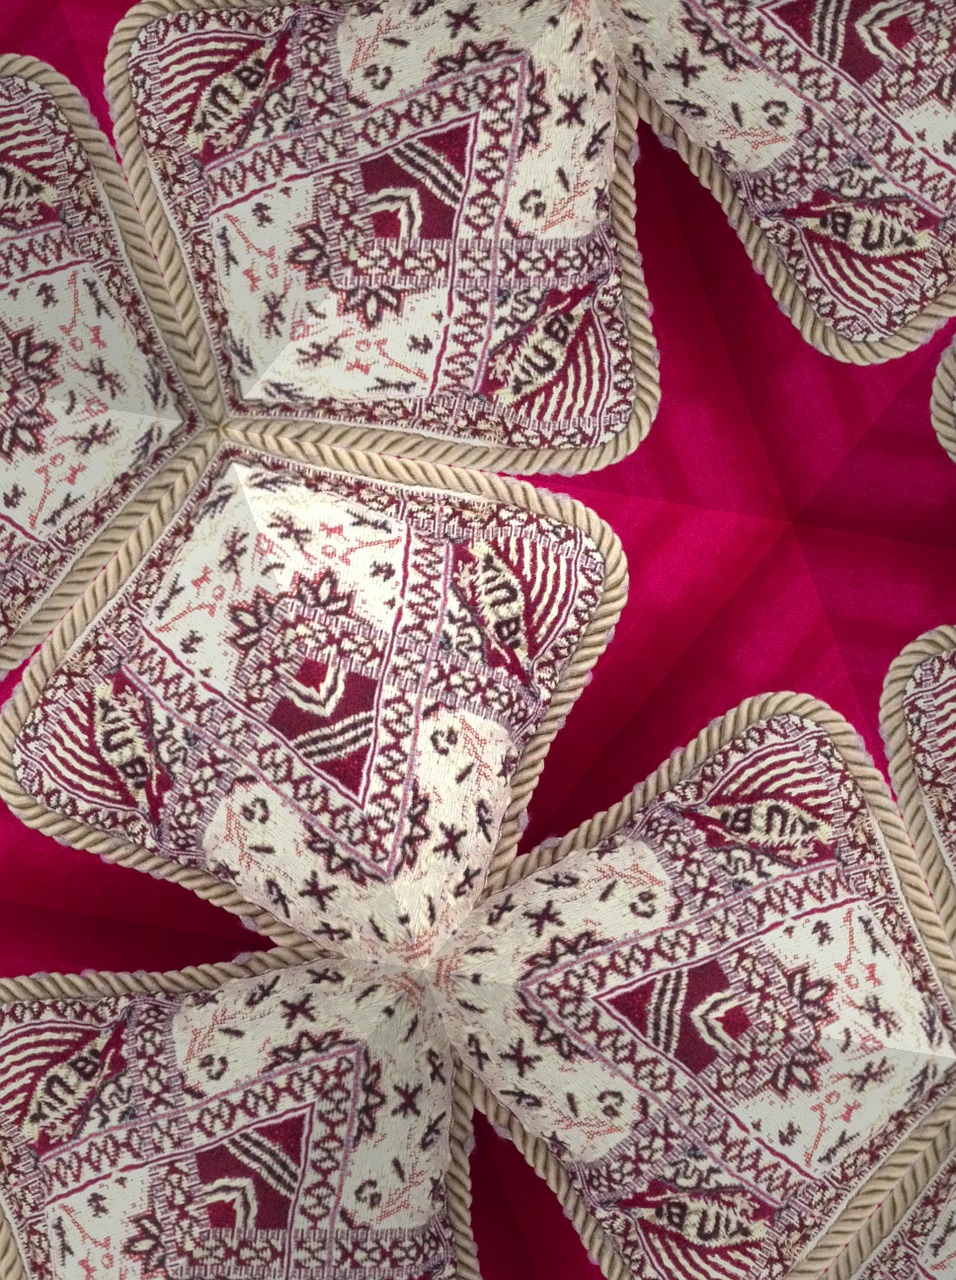 morocco motif pattern free photo